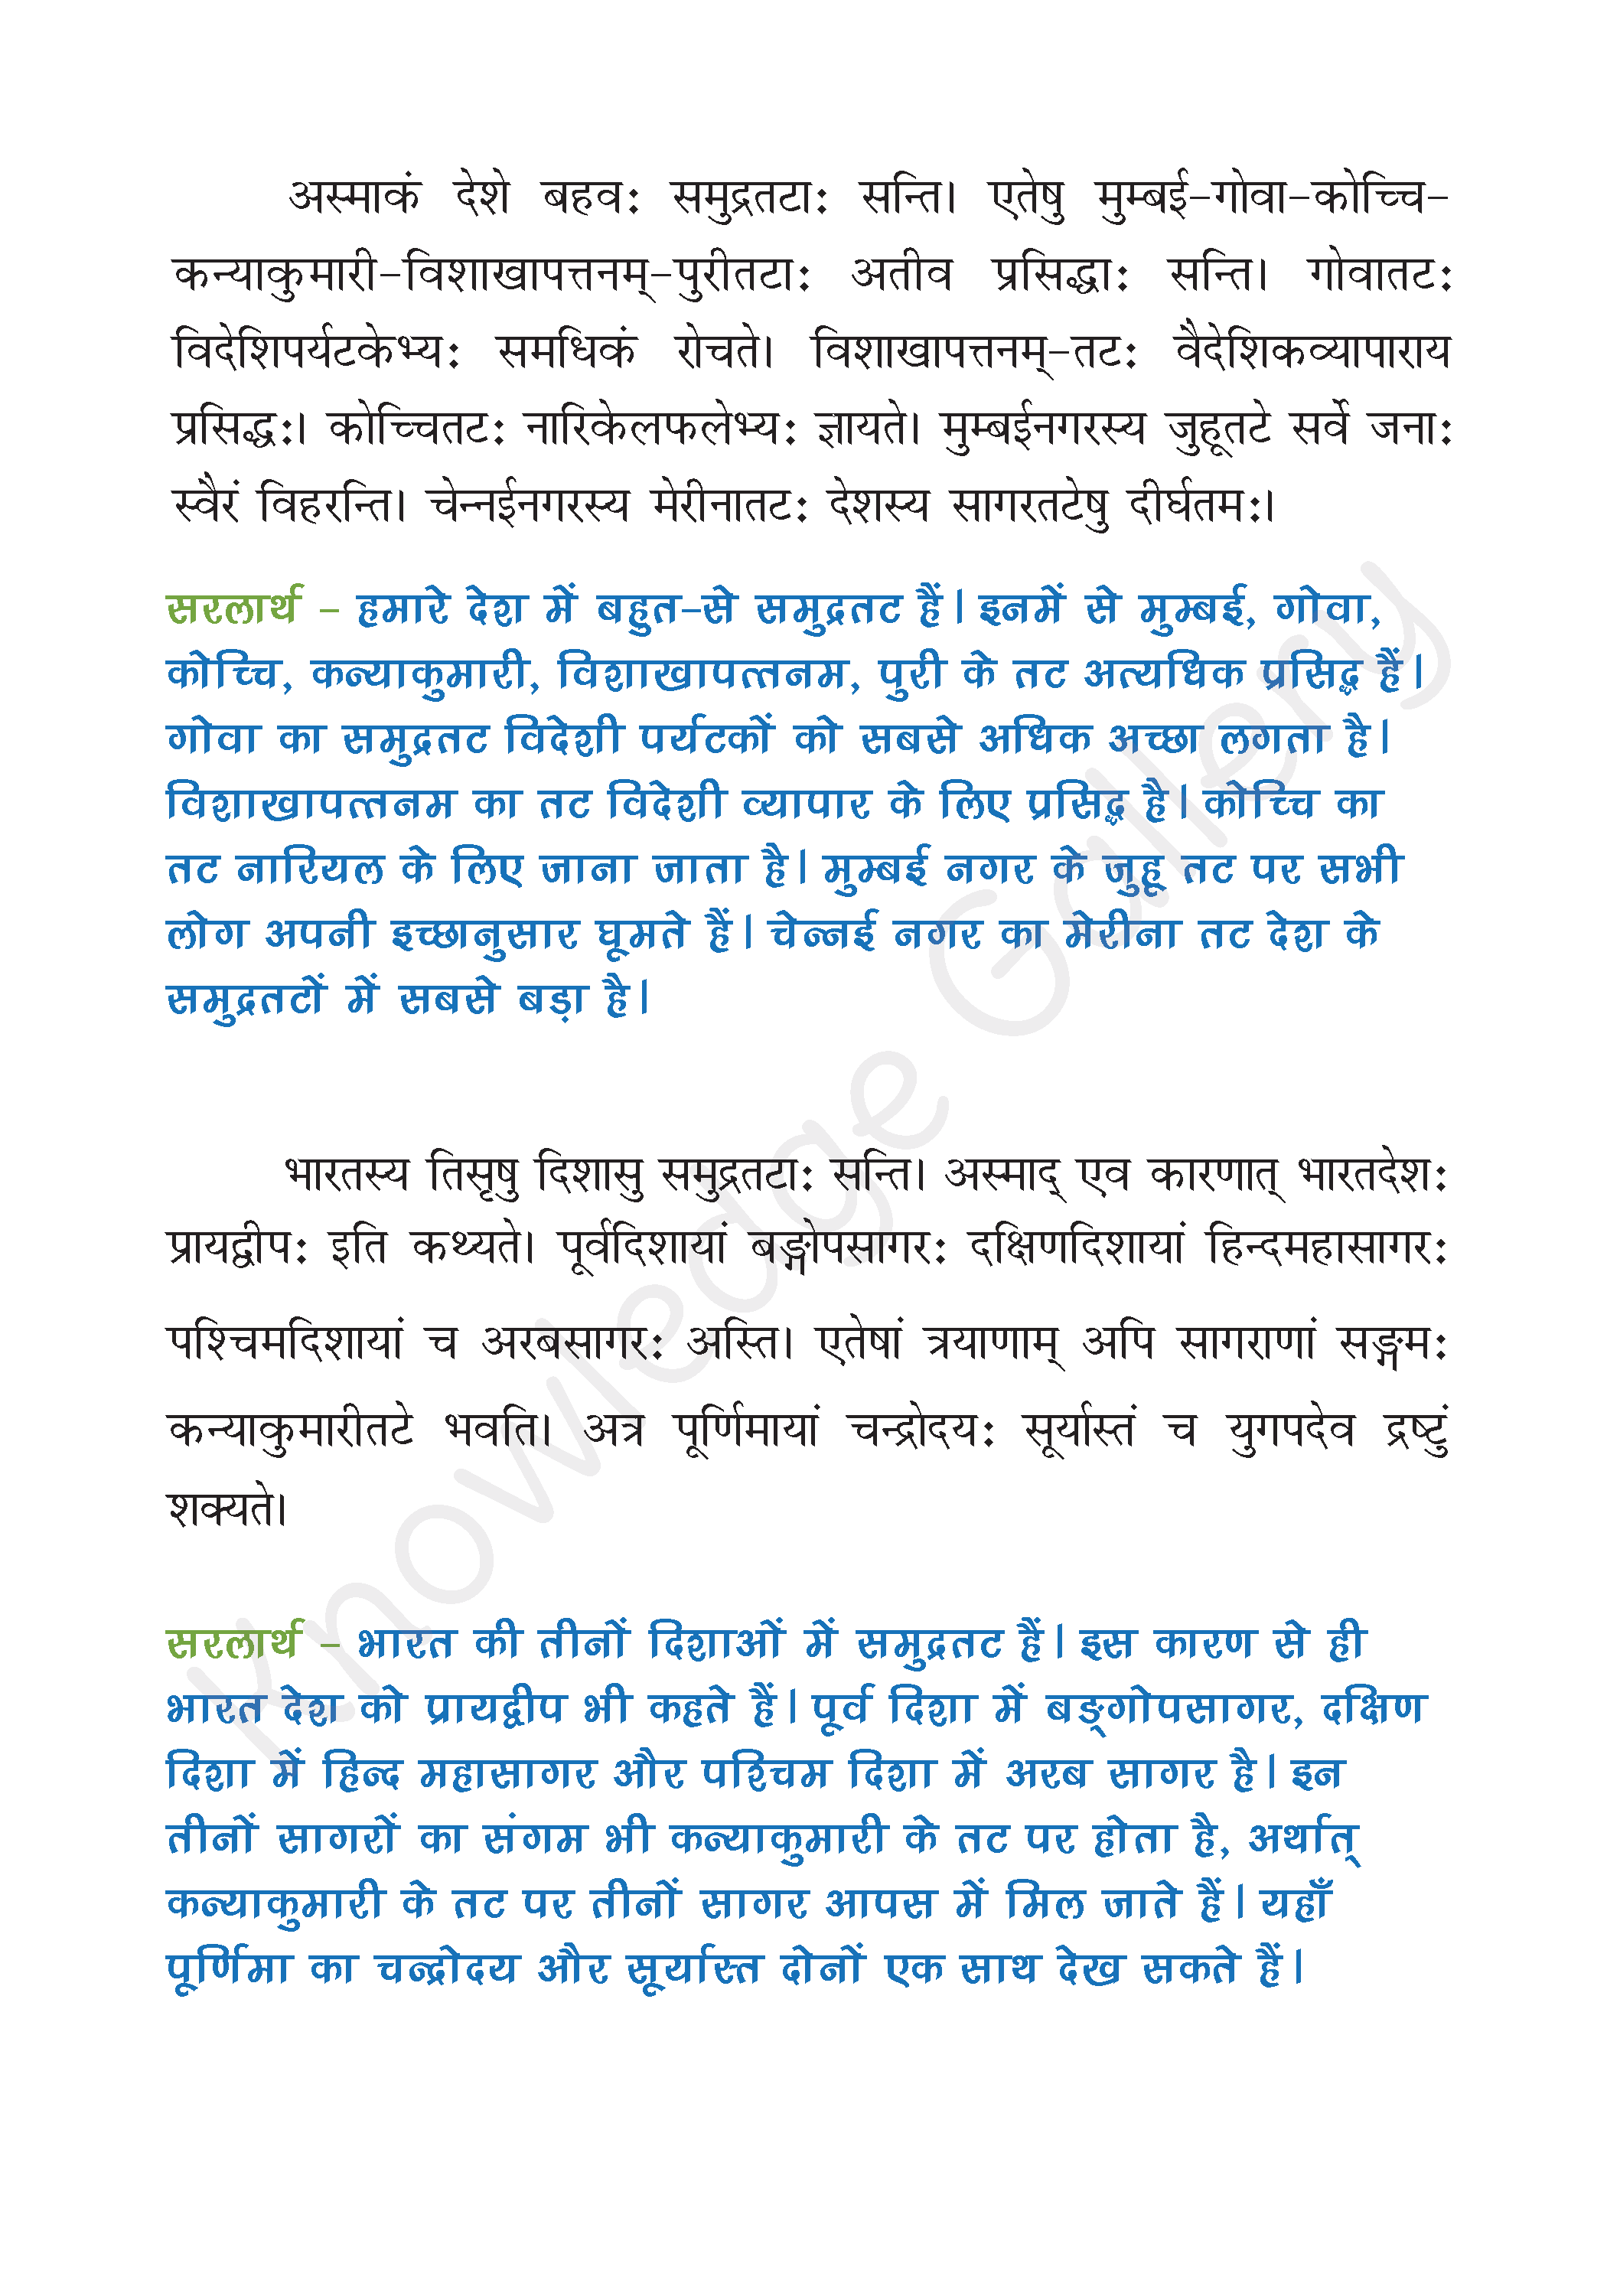 NCERT Solution For Class 6 Sanskrit Chapter 6 part 2